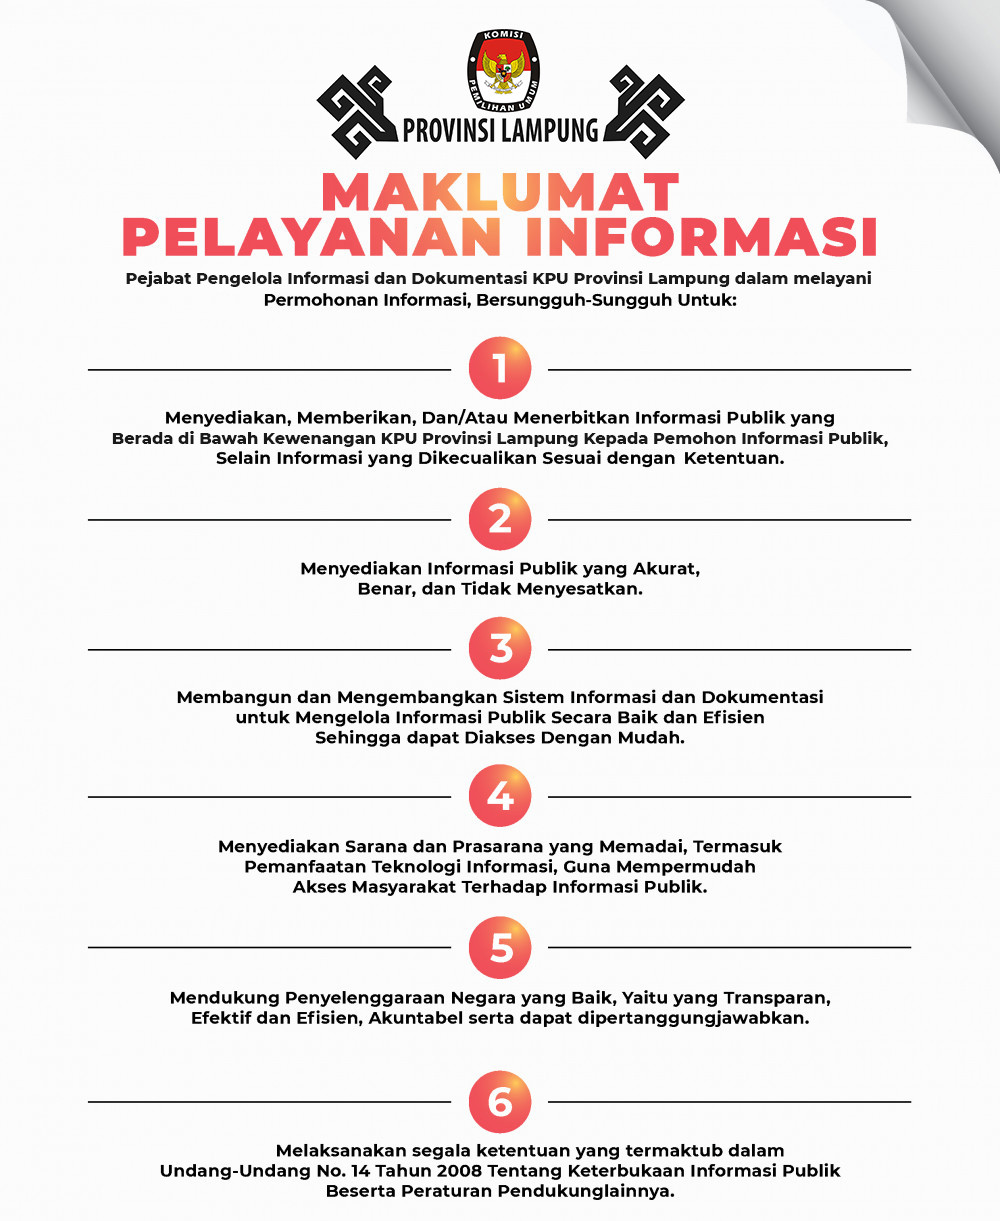 Maklumat PPID KPU Provinsi Lampung